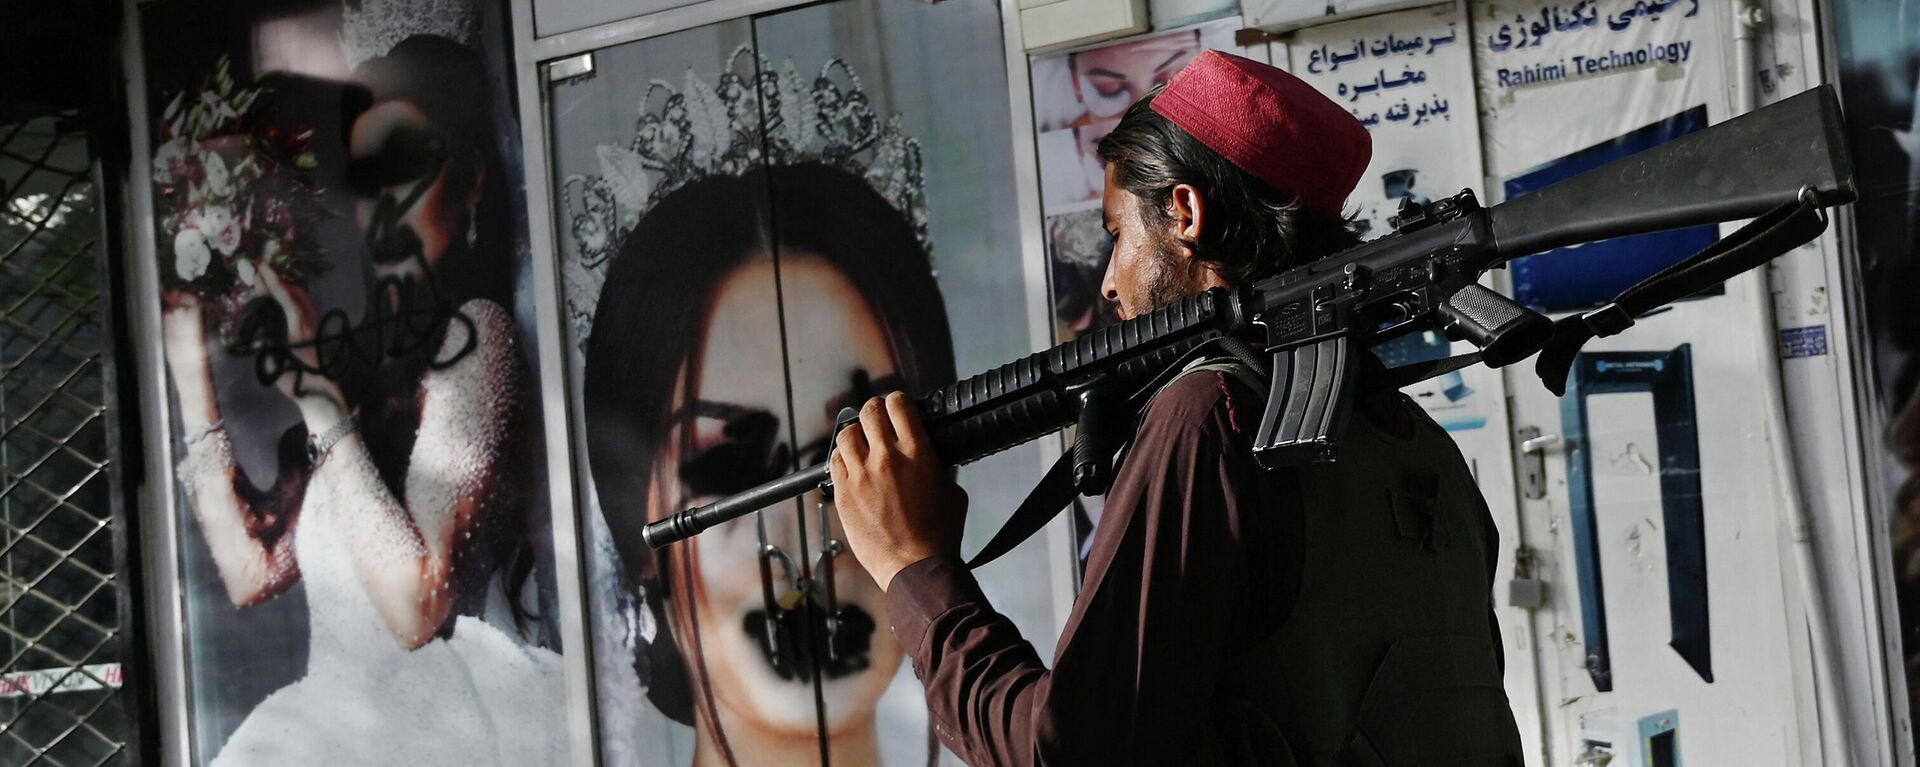 Un soldado talibán camina frente a un salón de belleza con imágenes de mujeres desfiguradas con spray, en Shar-e-Naw en Kabul, el 18 de agosto de 2021 - Sputnik Mundo, 1920, 18.08.2021